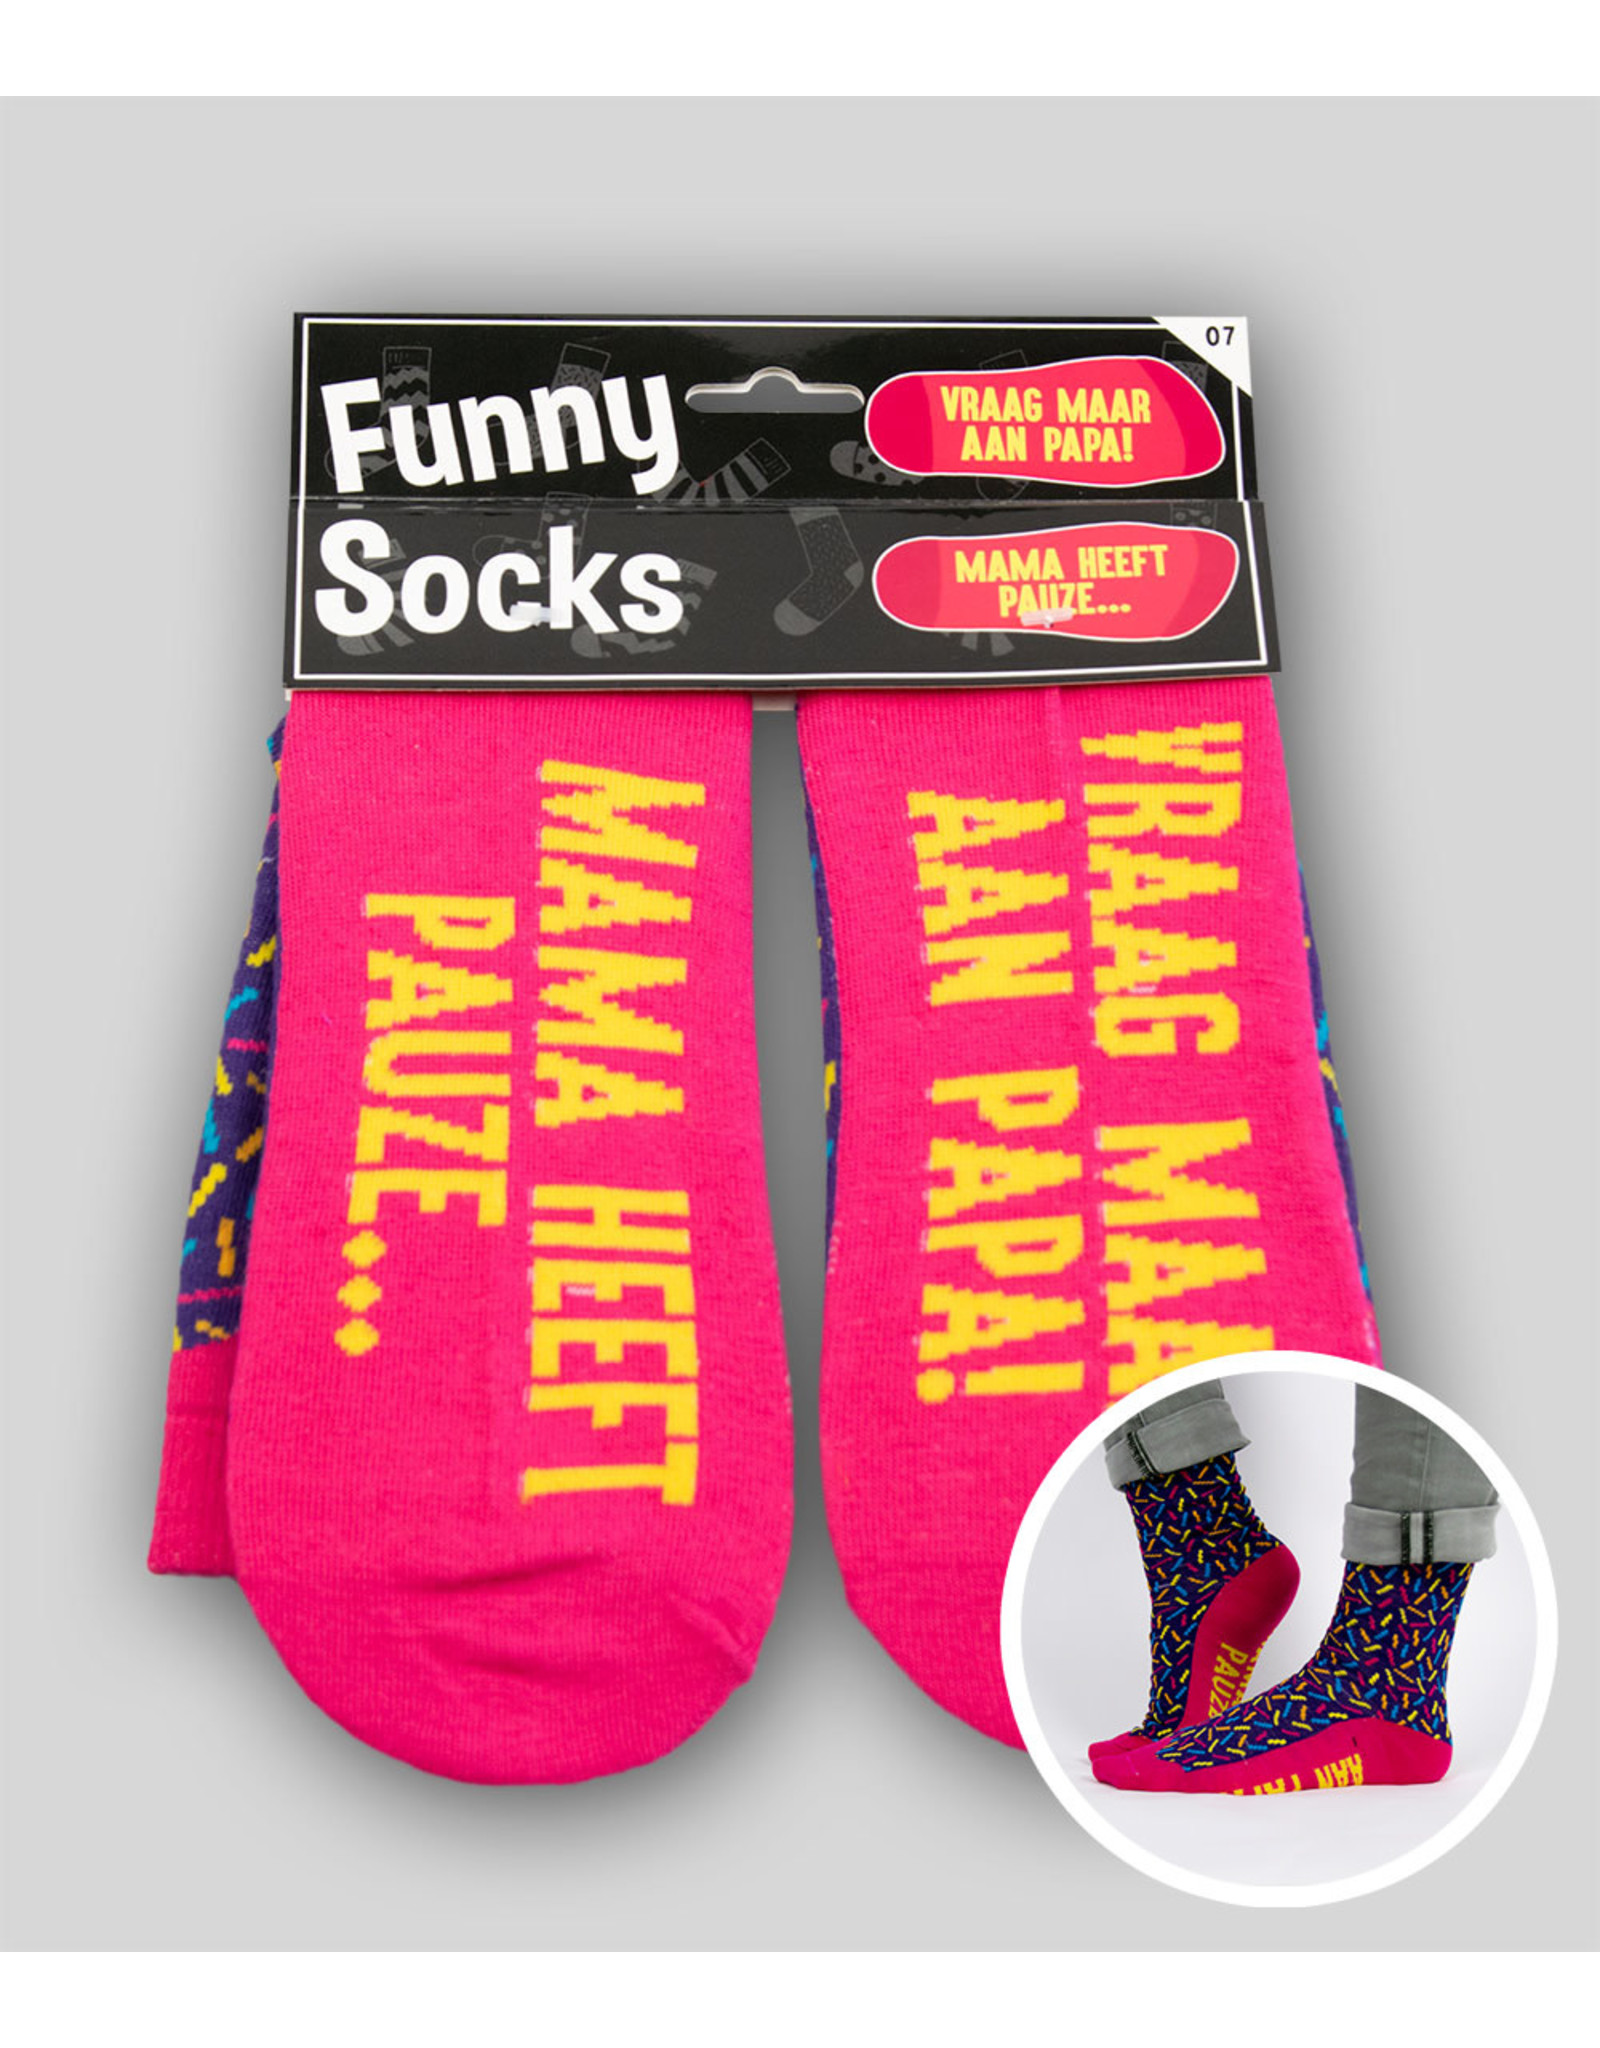 Funny socks Mama heeft pauze